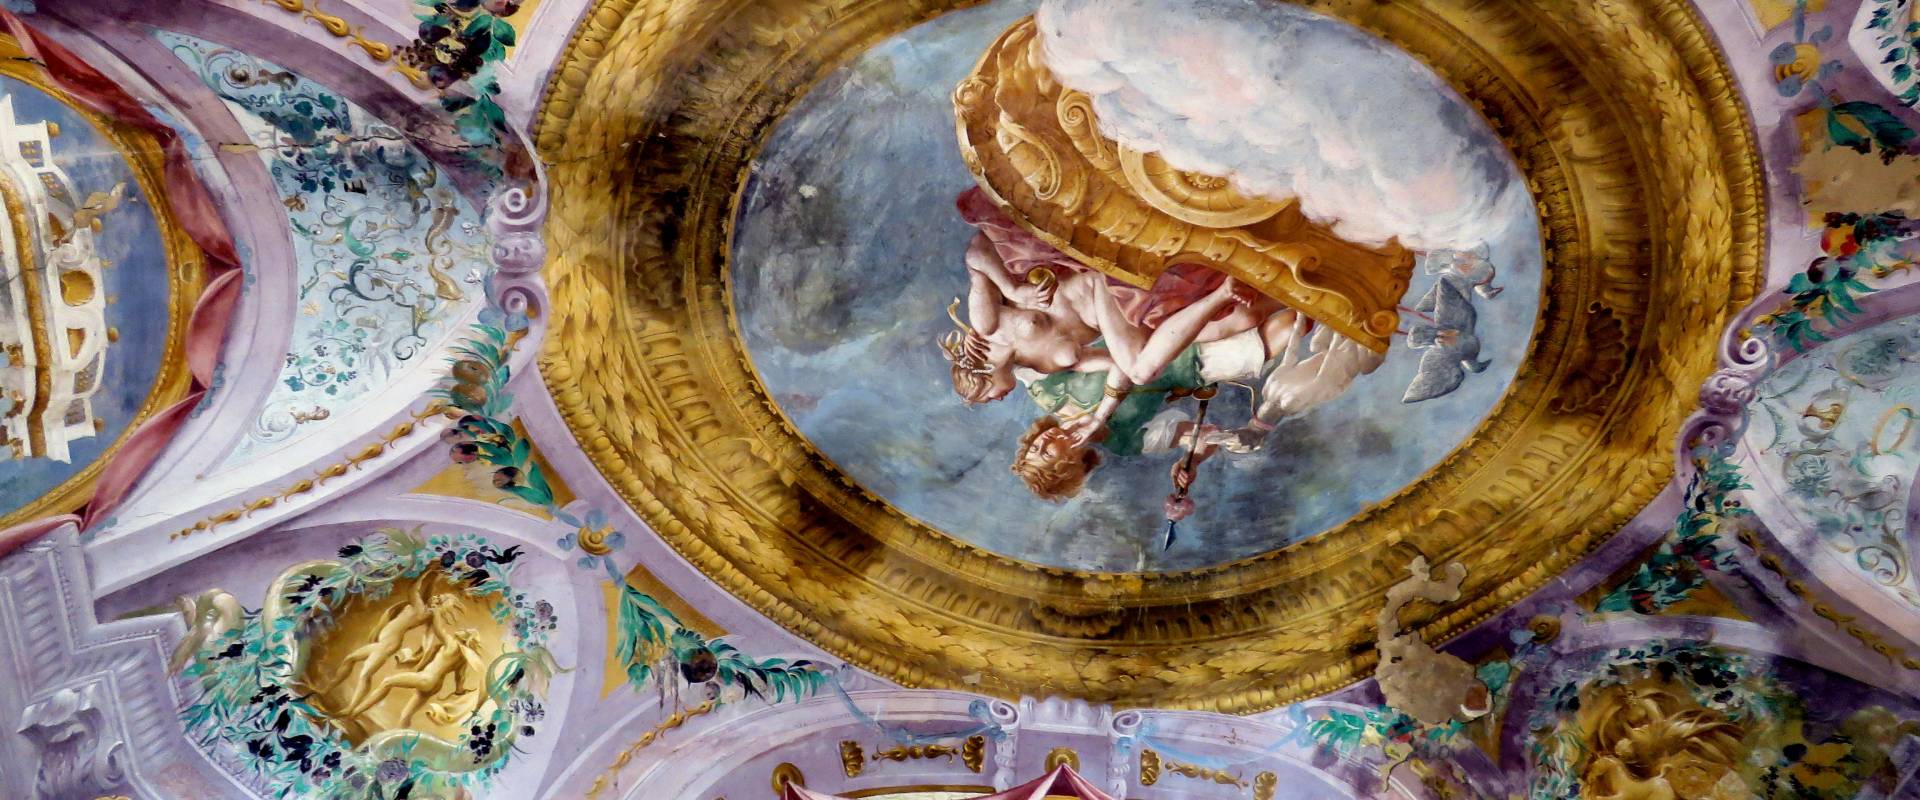 fresco photo by Giacopini Vito